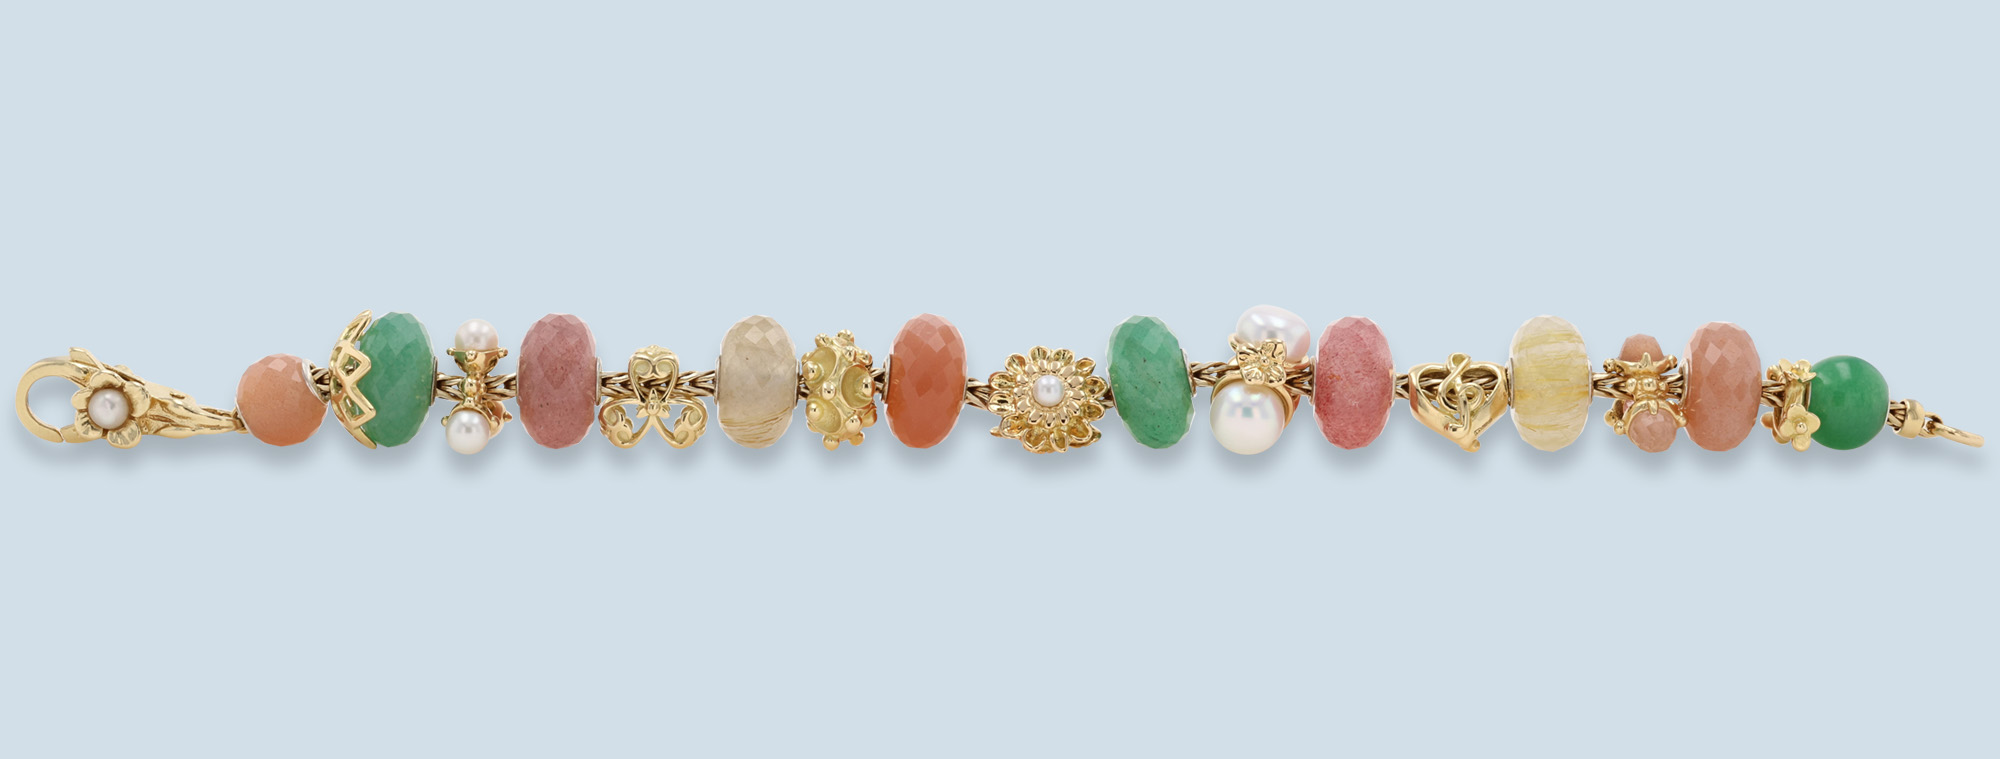 Trollbeads Gold Bracelet with Aventurine & Strawberry Quartz Precious Stone Beads